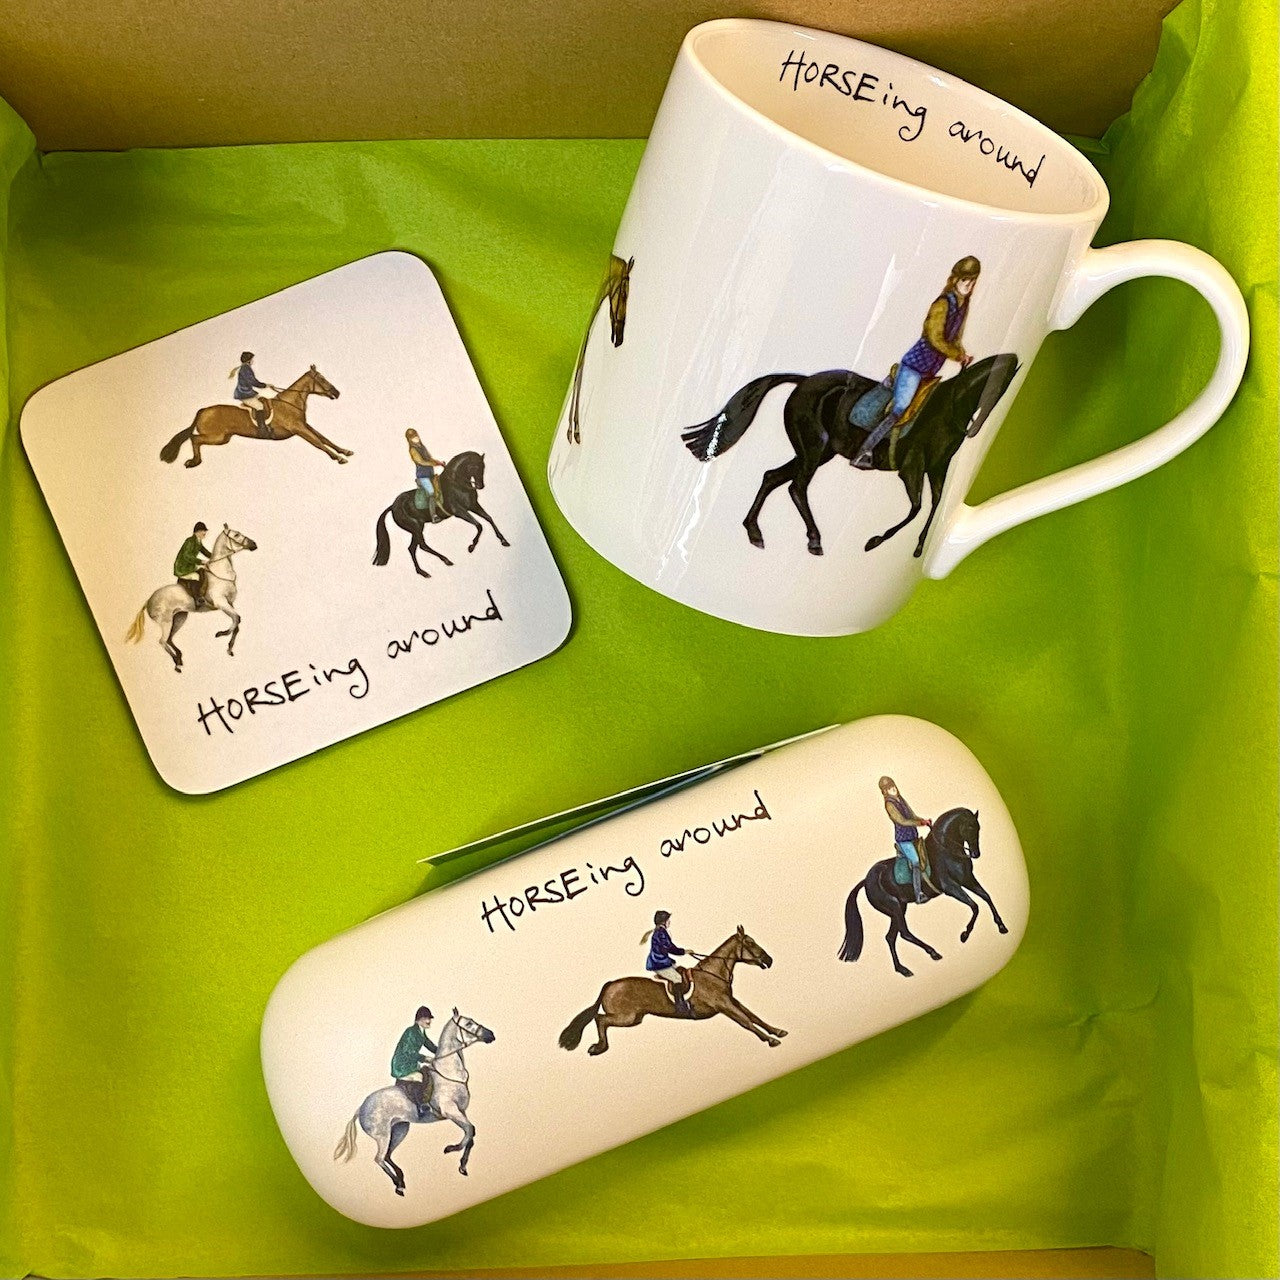 The "Horse'ing Around" Gift Box